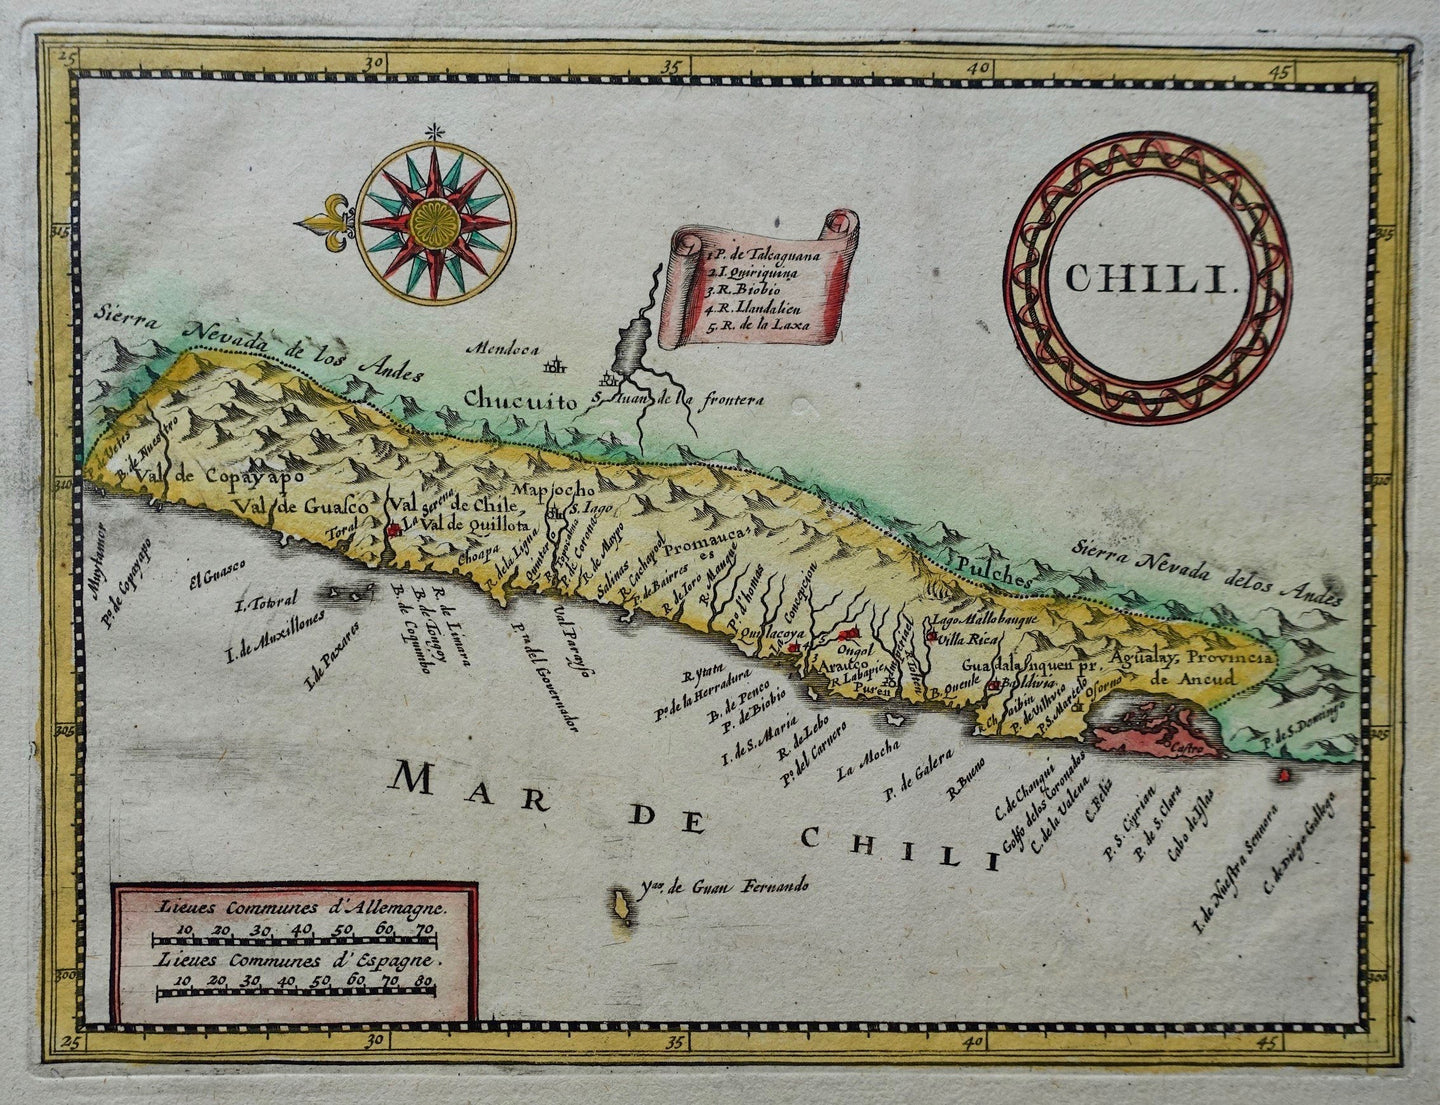 Chili Chile - Pieter van der Aa - circa 1714